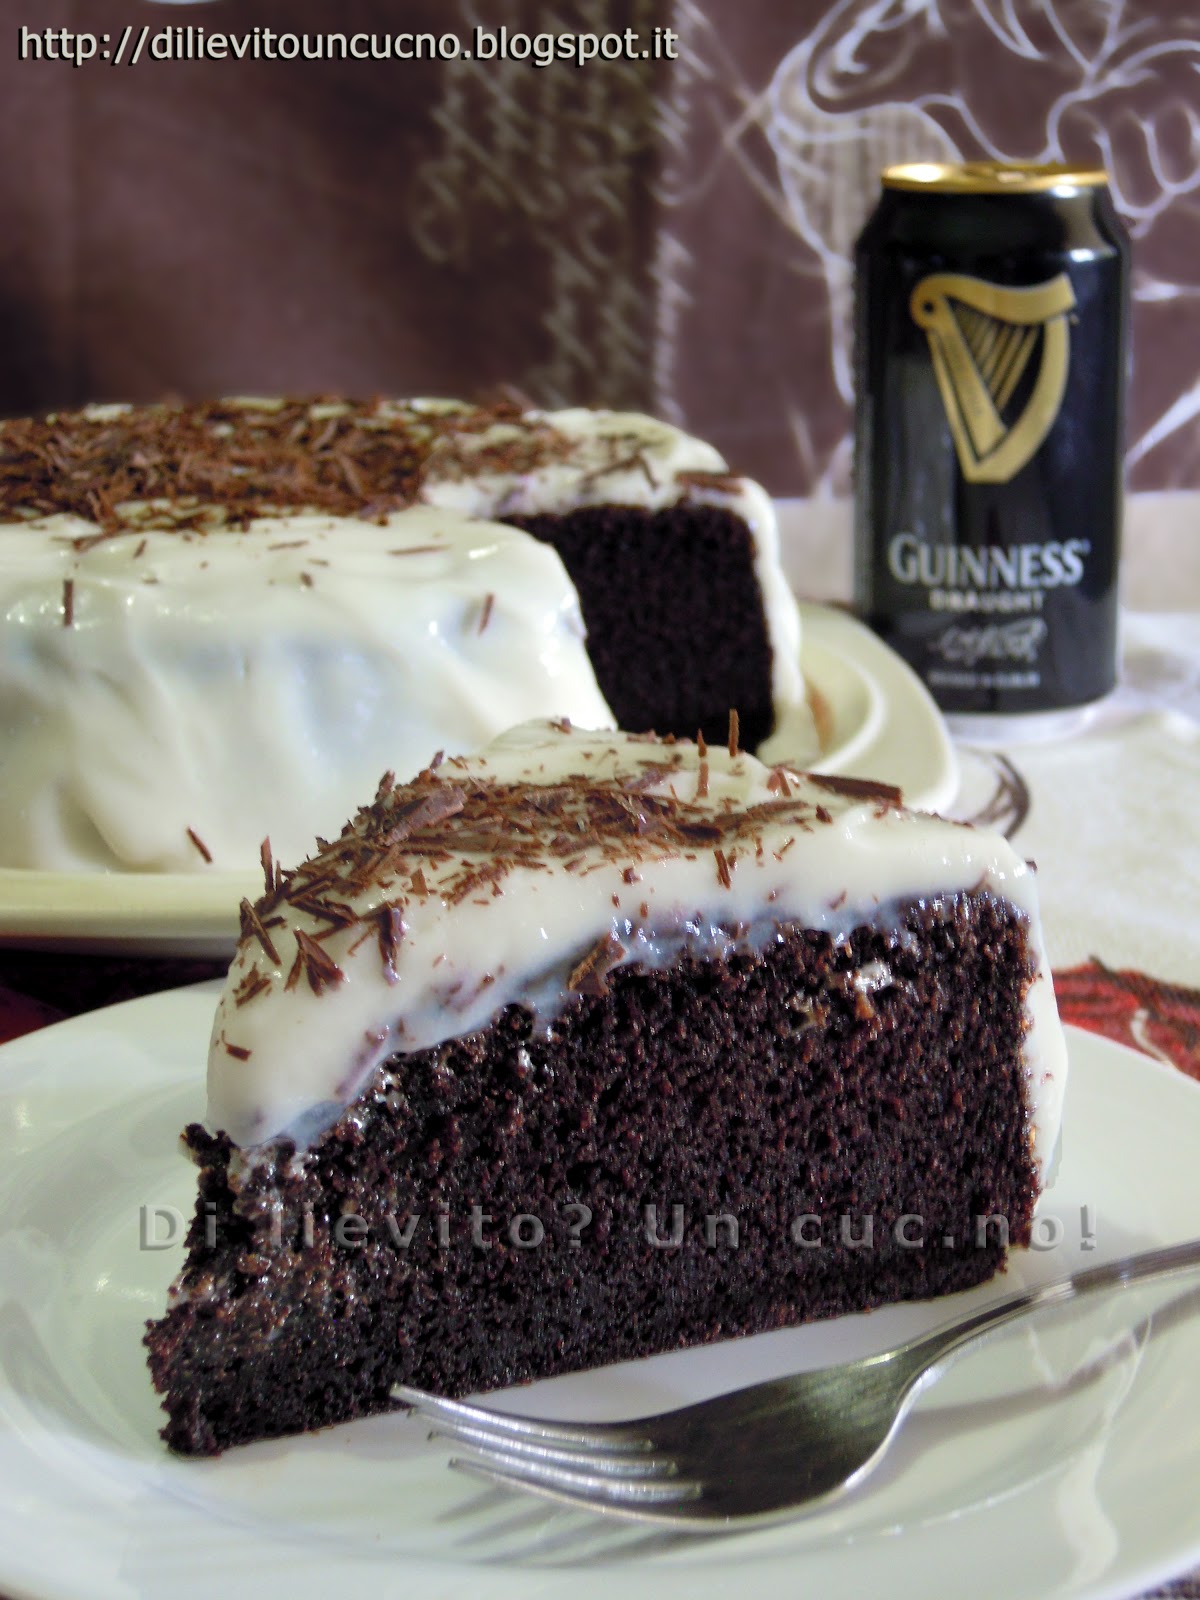 Di lievito? Un cuc.no!: Torta da Guinness e pasticceri da Record